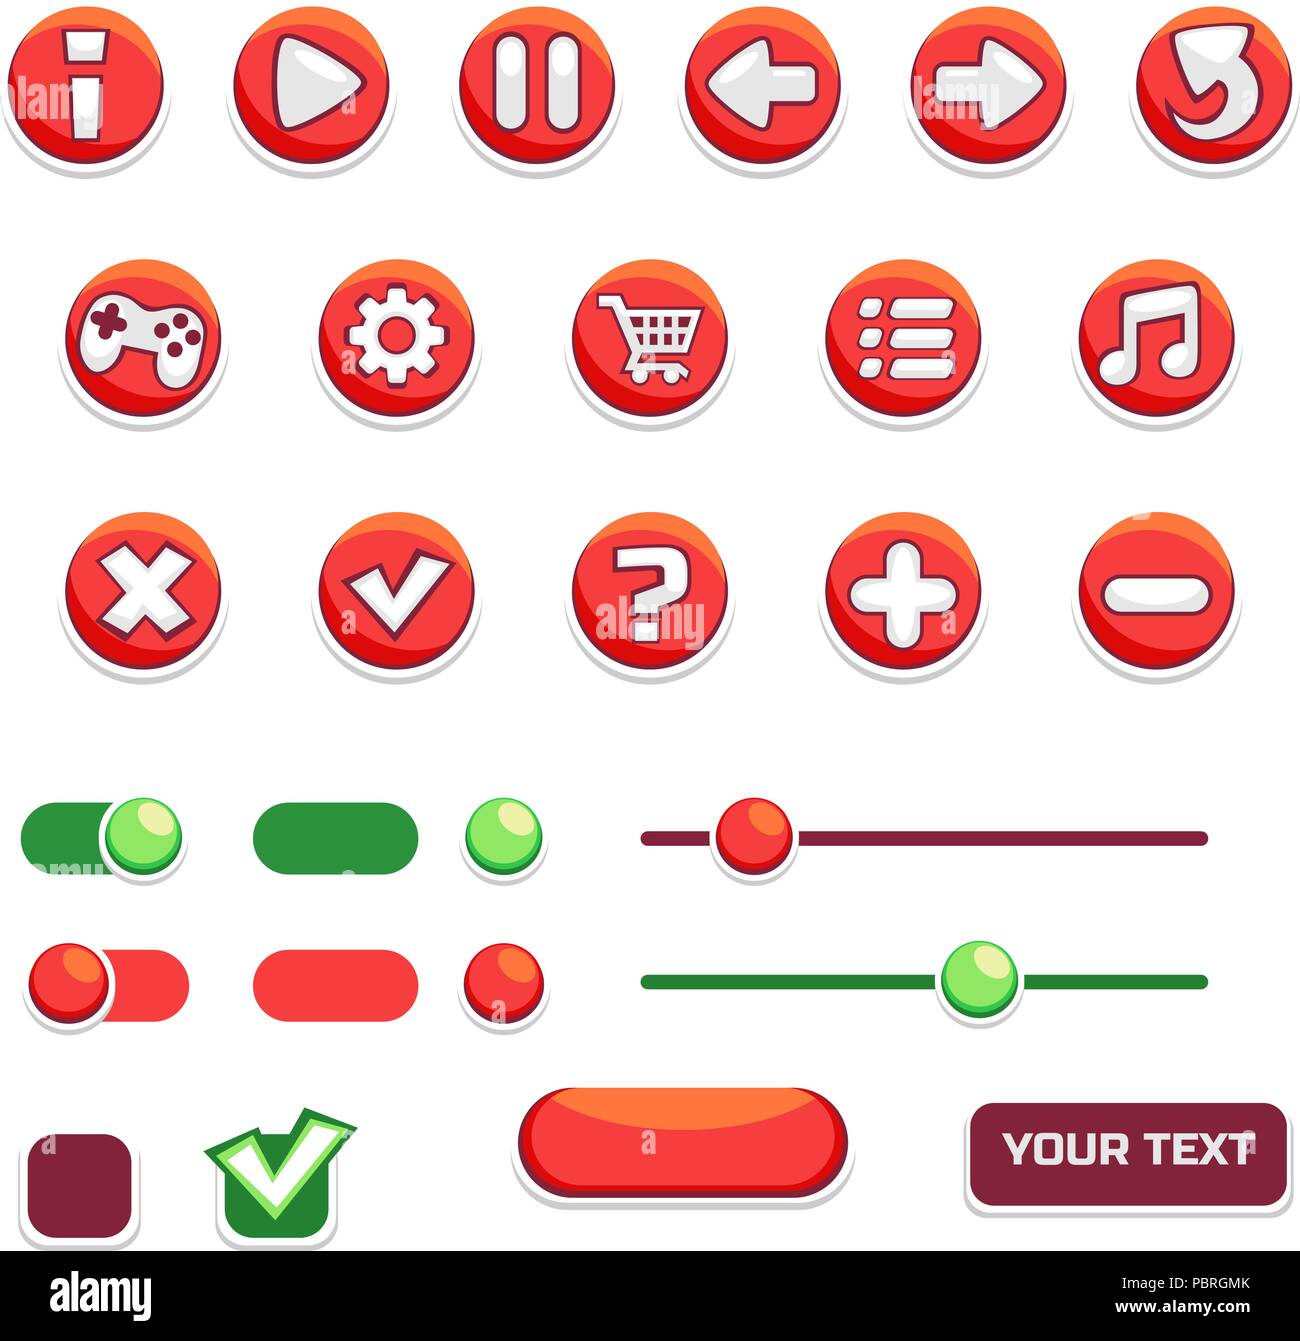 Cartoon ensemble de boutons de jeu et l'interface utilisateur Illustration de Vecteur